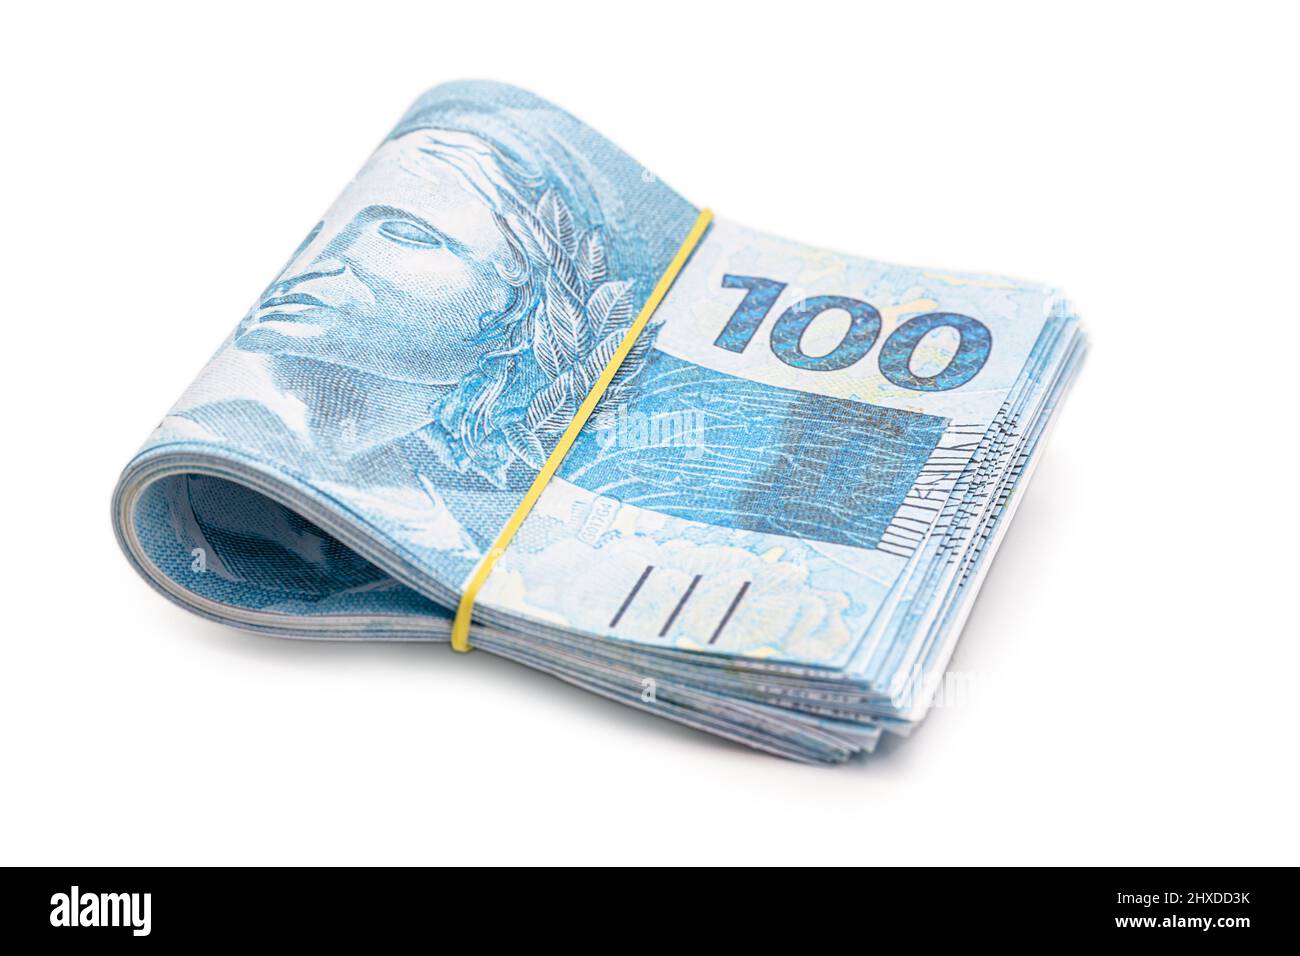 molte banconote da 100 reais, denaro brasiliano, migliaia di reais, pagamento, stipendio, su sfondo bianco isolato Foto Stock